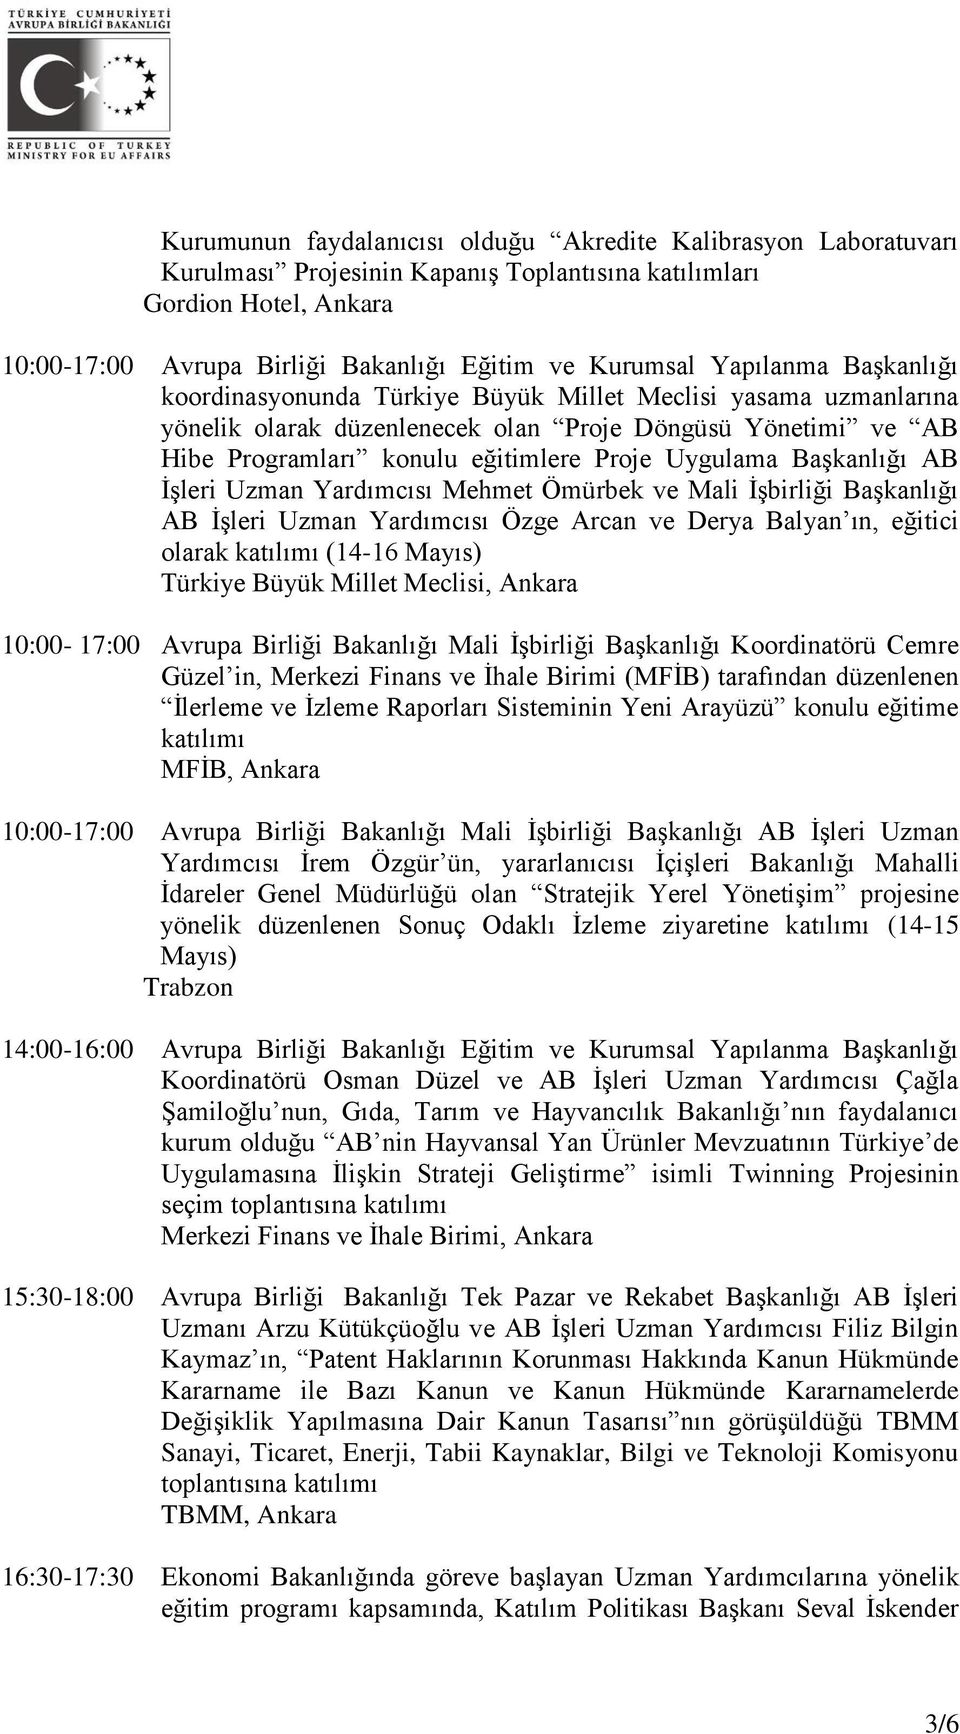 Başkanlığı AB İşleri Uzman Yardımcısı Mehmet Ömürbek ve Mali İşbirliği Başkanlığı AB İşleri Uzman Yardımcısı Özge Arcan ve Derya Balyan ın, eğitici olarak katılımı (14-16 Mayıs) Türkiye Büyük Millet